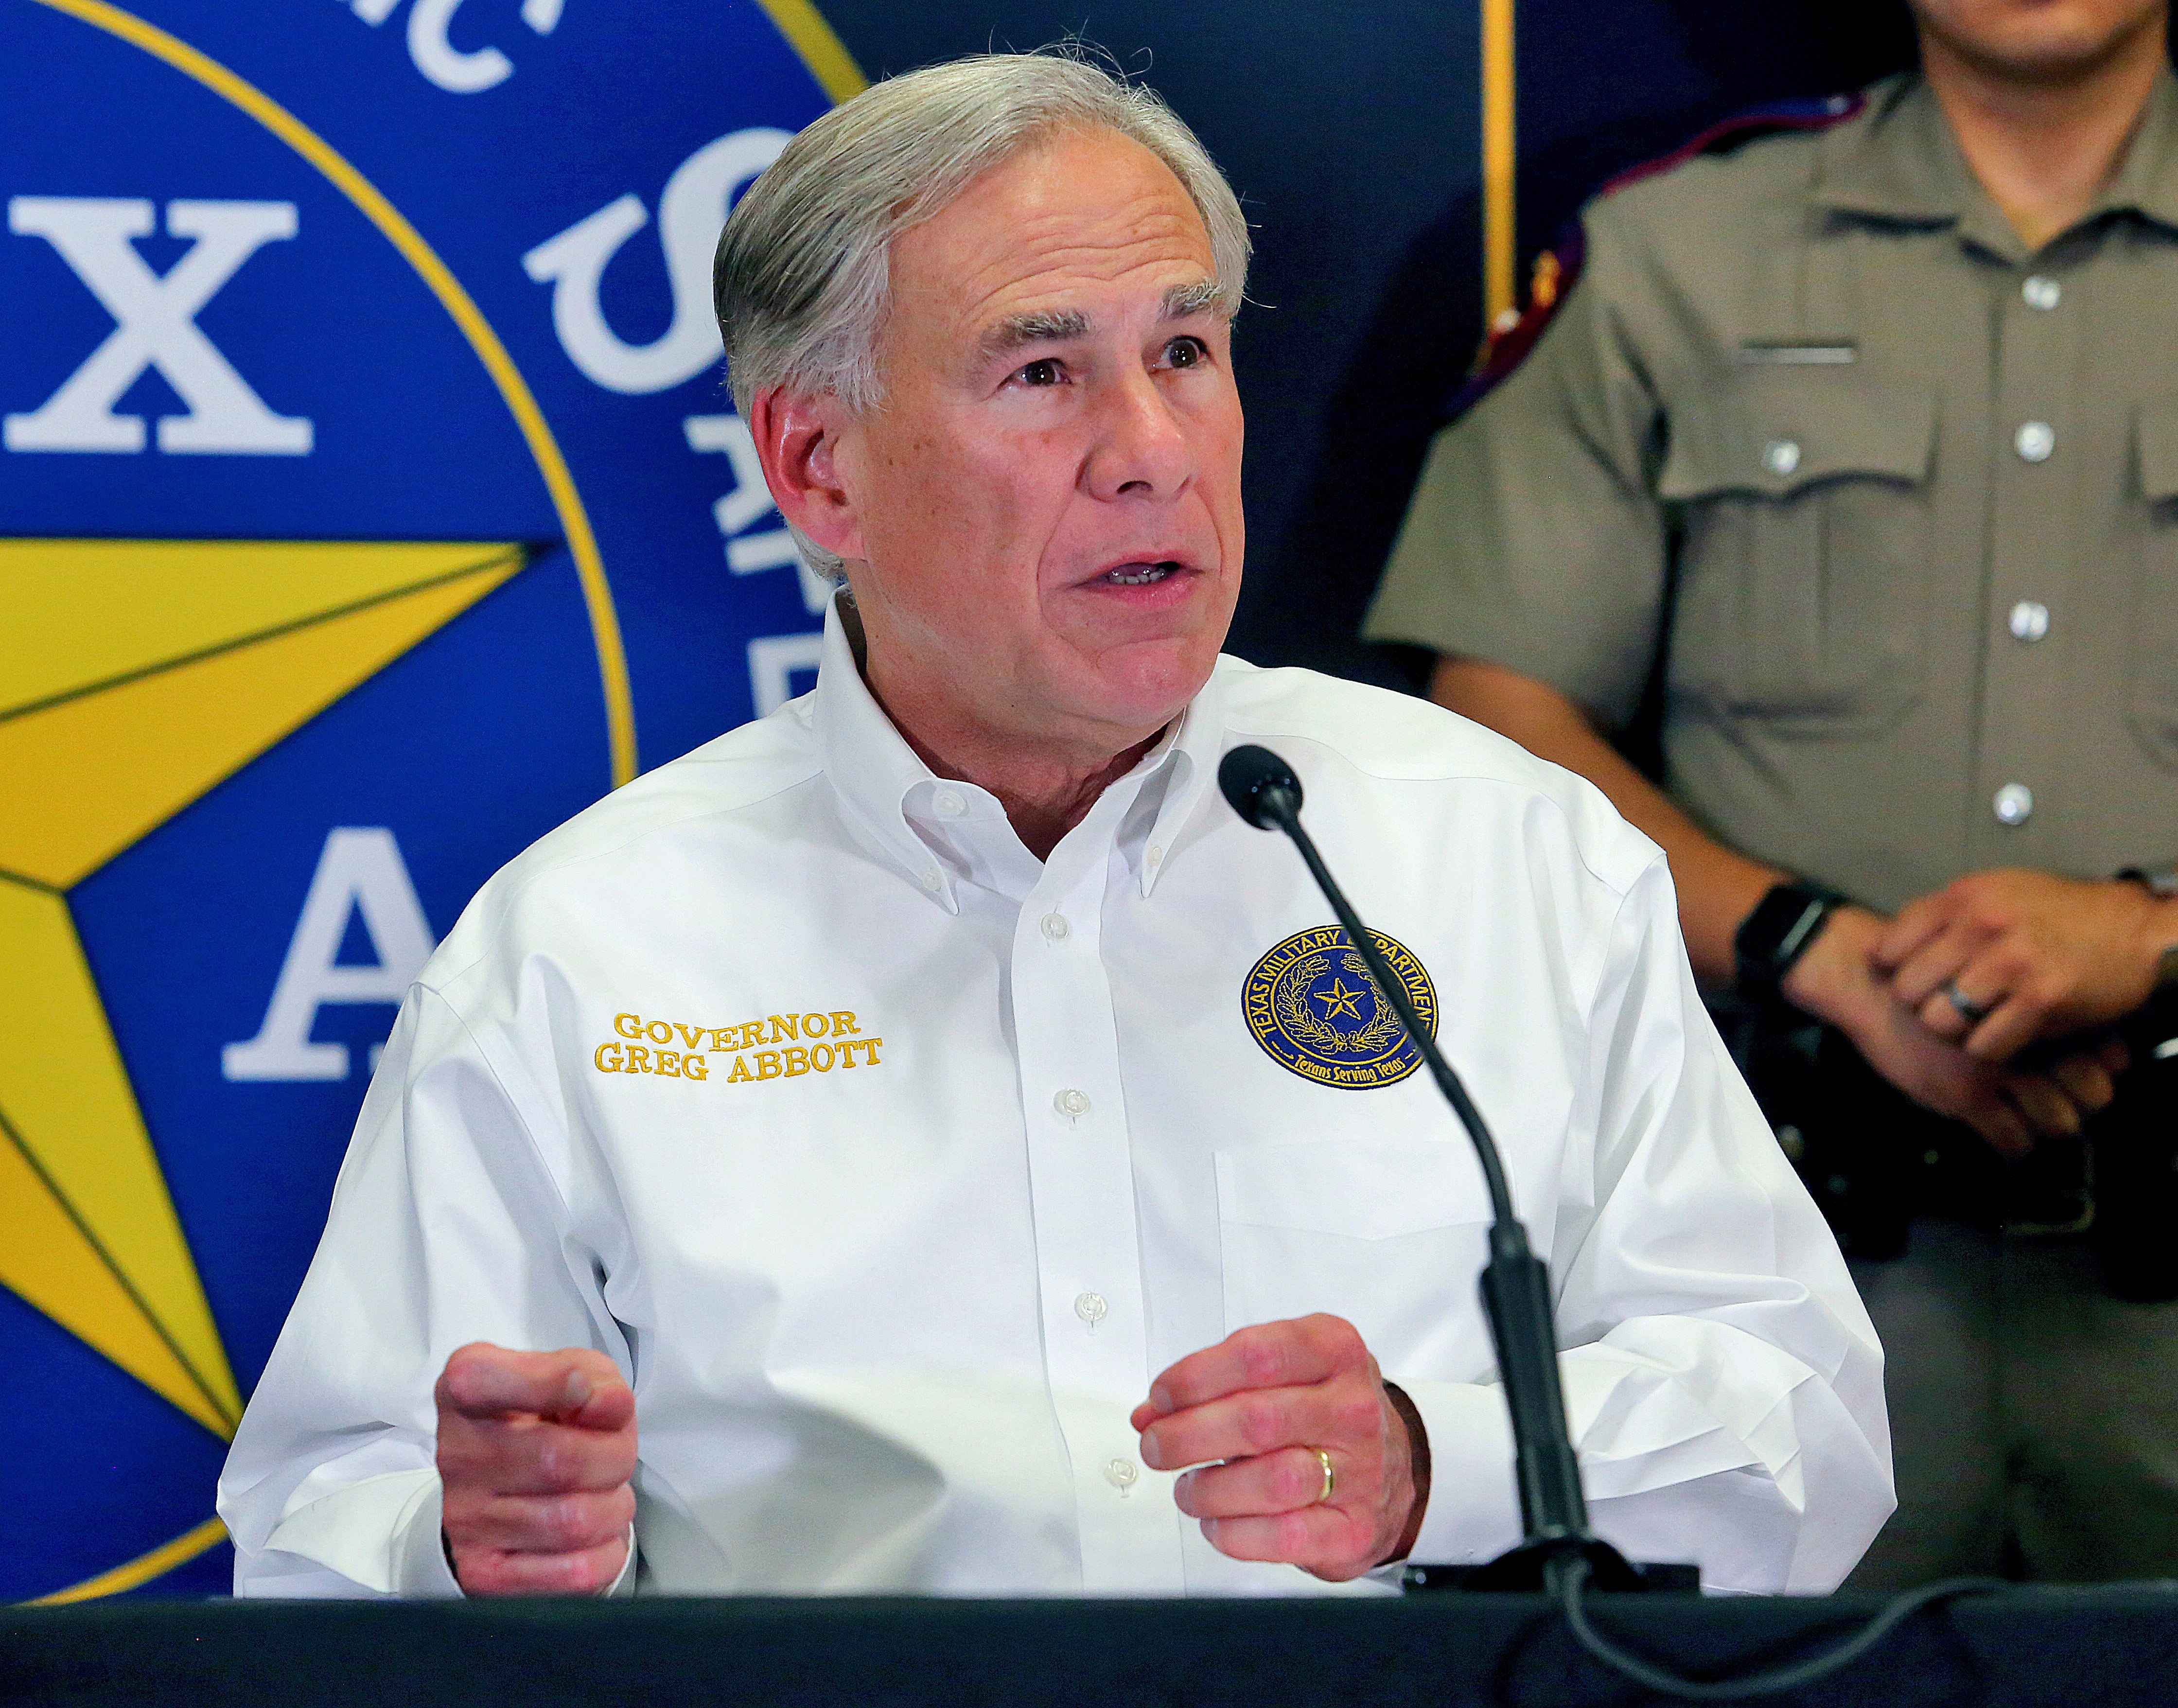 El gobernador Greg Abbott tiene previsto dar una rueda de prensa sobre el tiroteo en la escuela de Uvalde, Texas